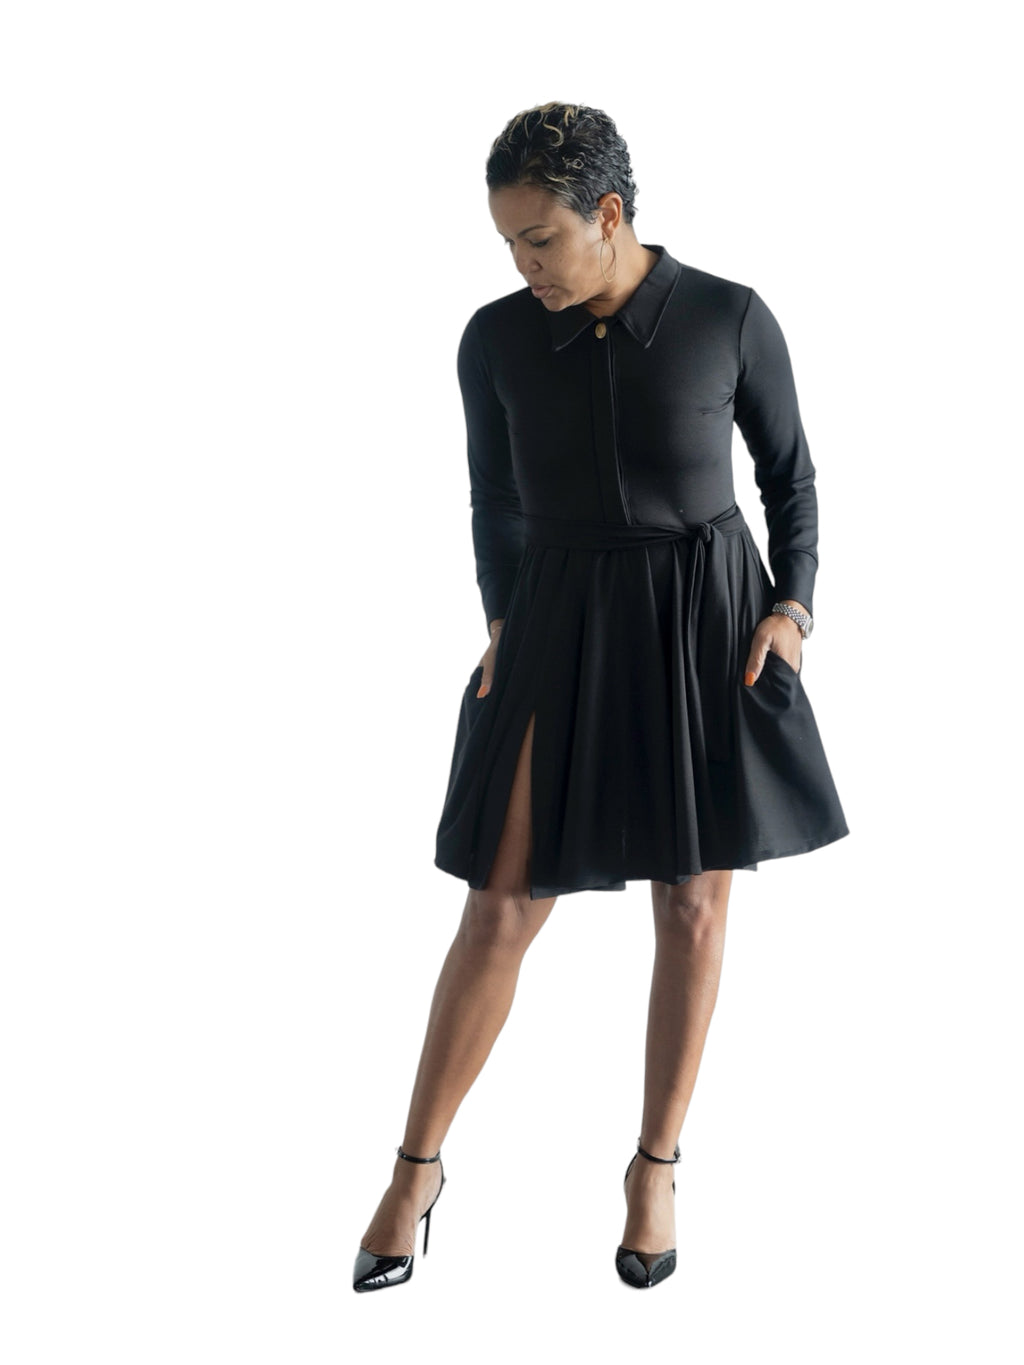 Michelle - Black L/S Classic Cocktail Dress - TN-30 (PRE-Order)